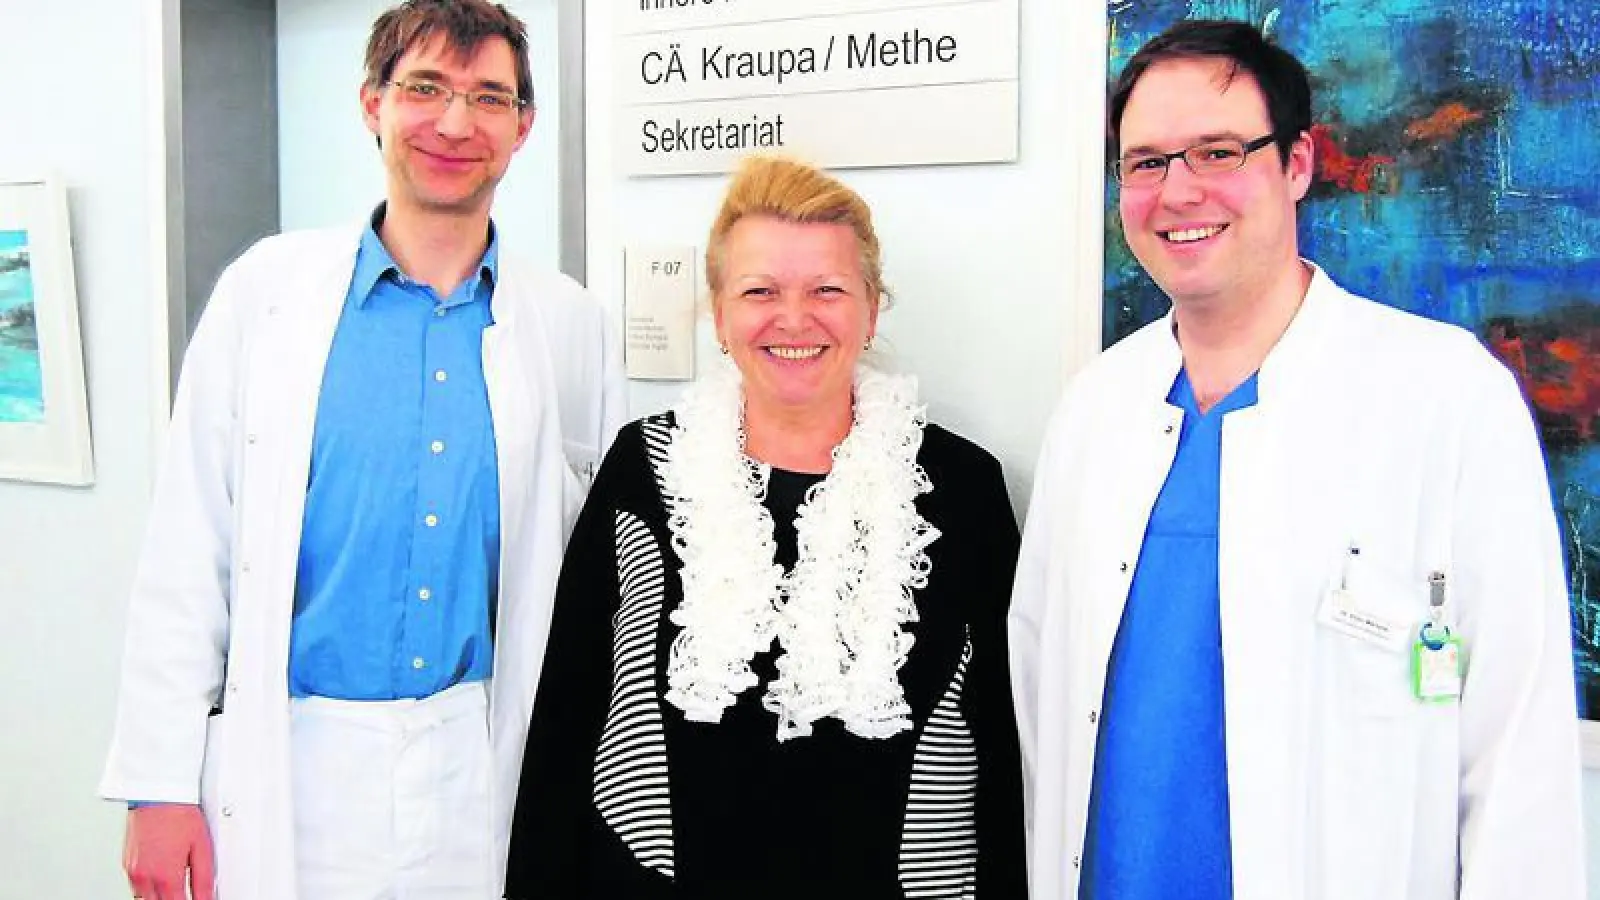 &lt;p&gt; &lt;x_bildunterschr&gt; &lt;b&gt;Das kleinste EKG &lt;/b&gt; der Welt hat Kerstin Landgraf in ihrer Brust. Eingesetzt wurde es ihr von Dr. Eimo Martens (rechts), worüber sich der Chef der Inneren, Privatdozent Professor Heiko Methe, freut.    Foto: Alfred Haas &lt;/x_bildunterschr&gt; &lt;/p&gt;